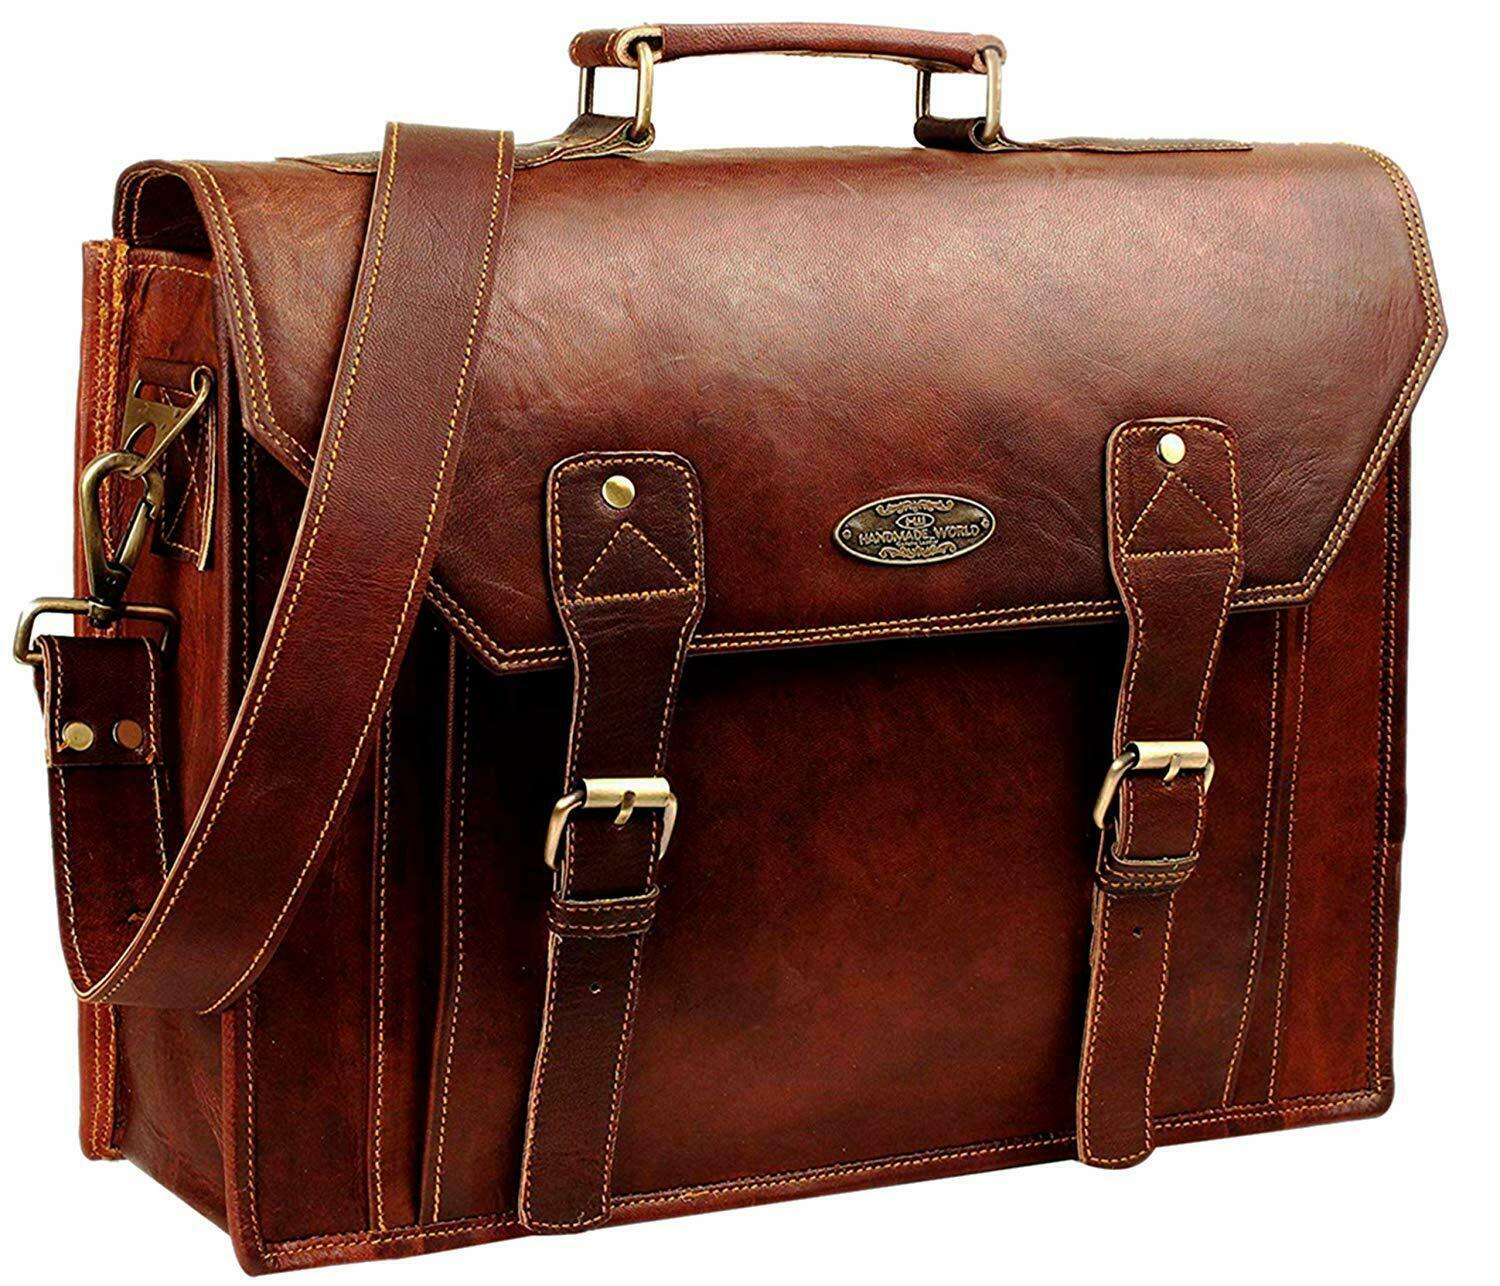 Leather Messenger Bag Briefcase office bag For Men & Women Best Laptop satchel - Bags & Backpacks